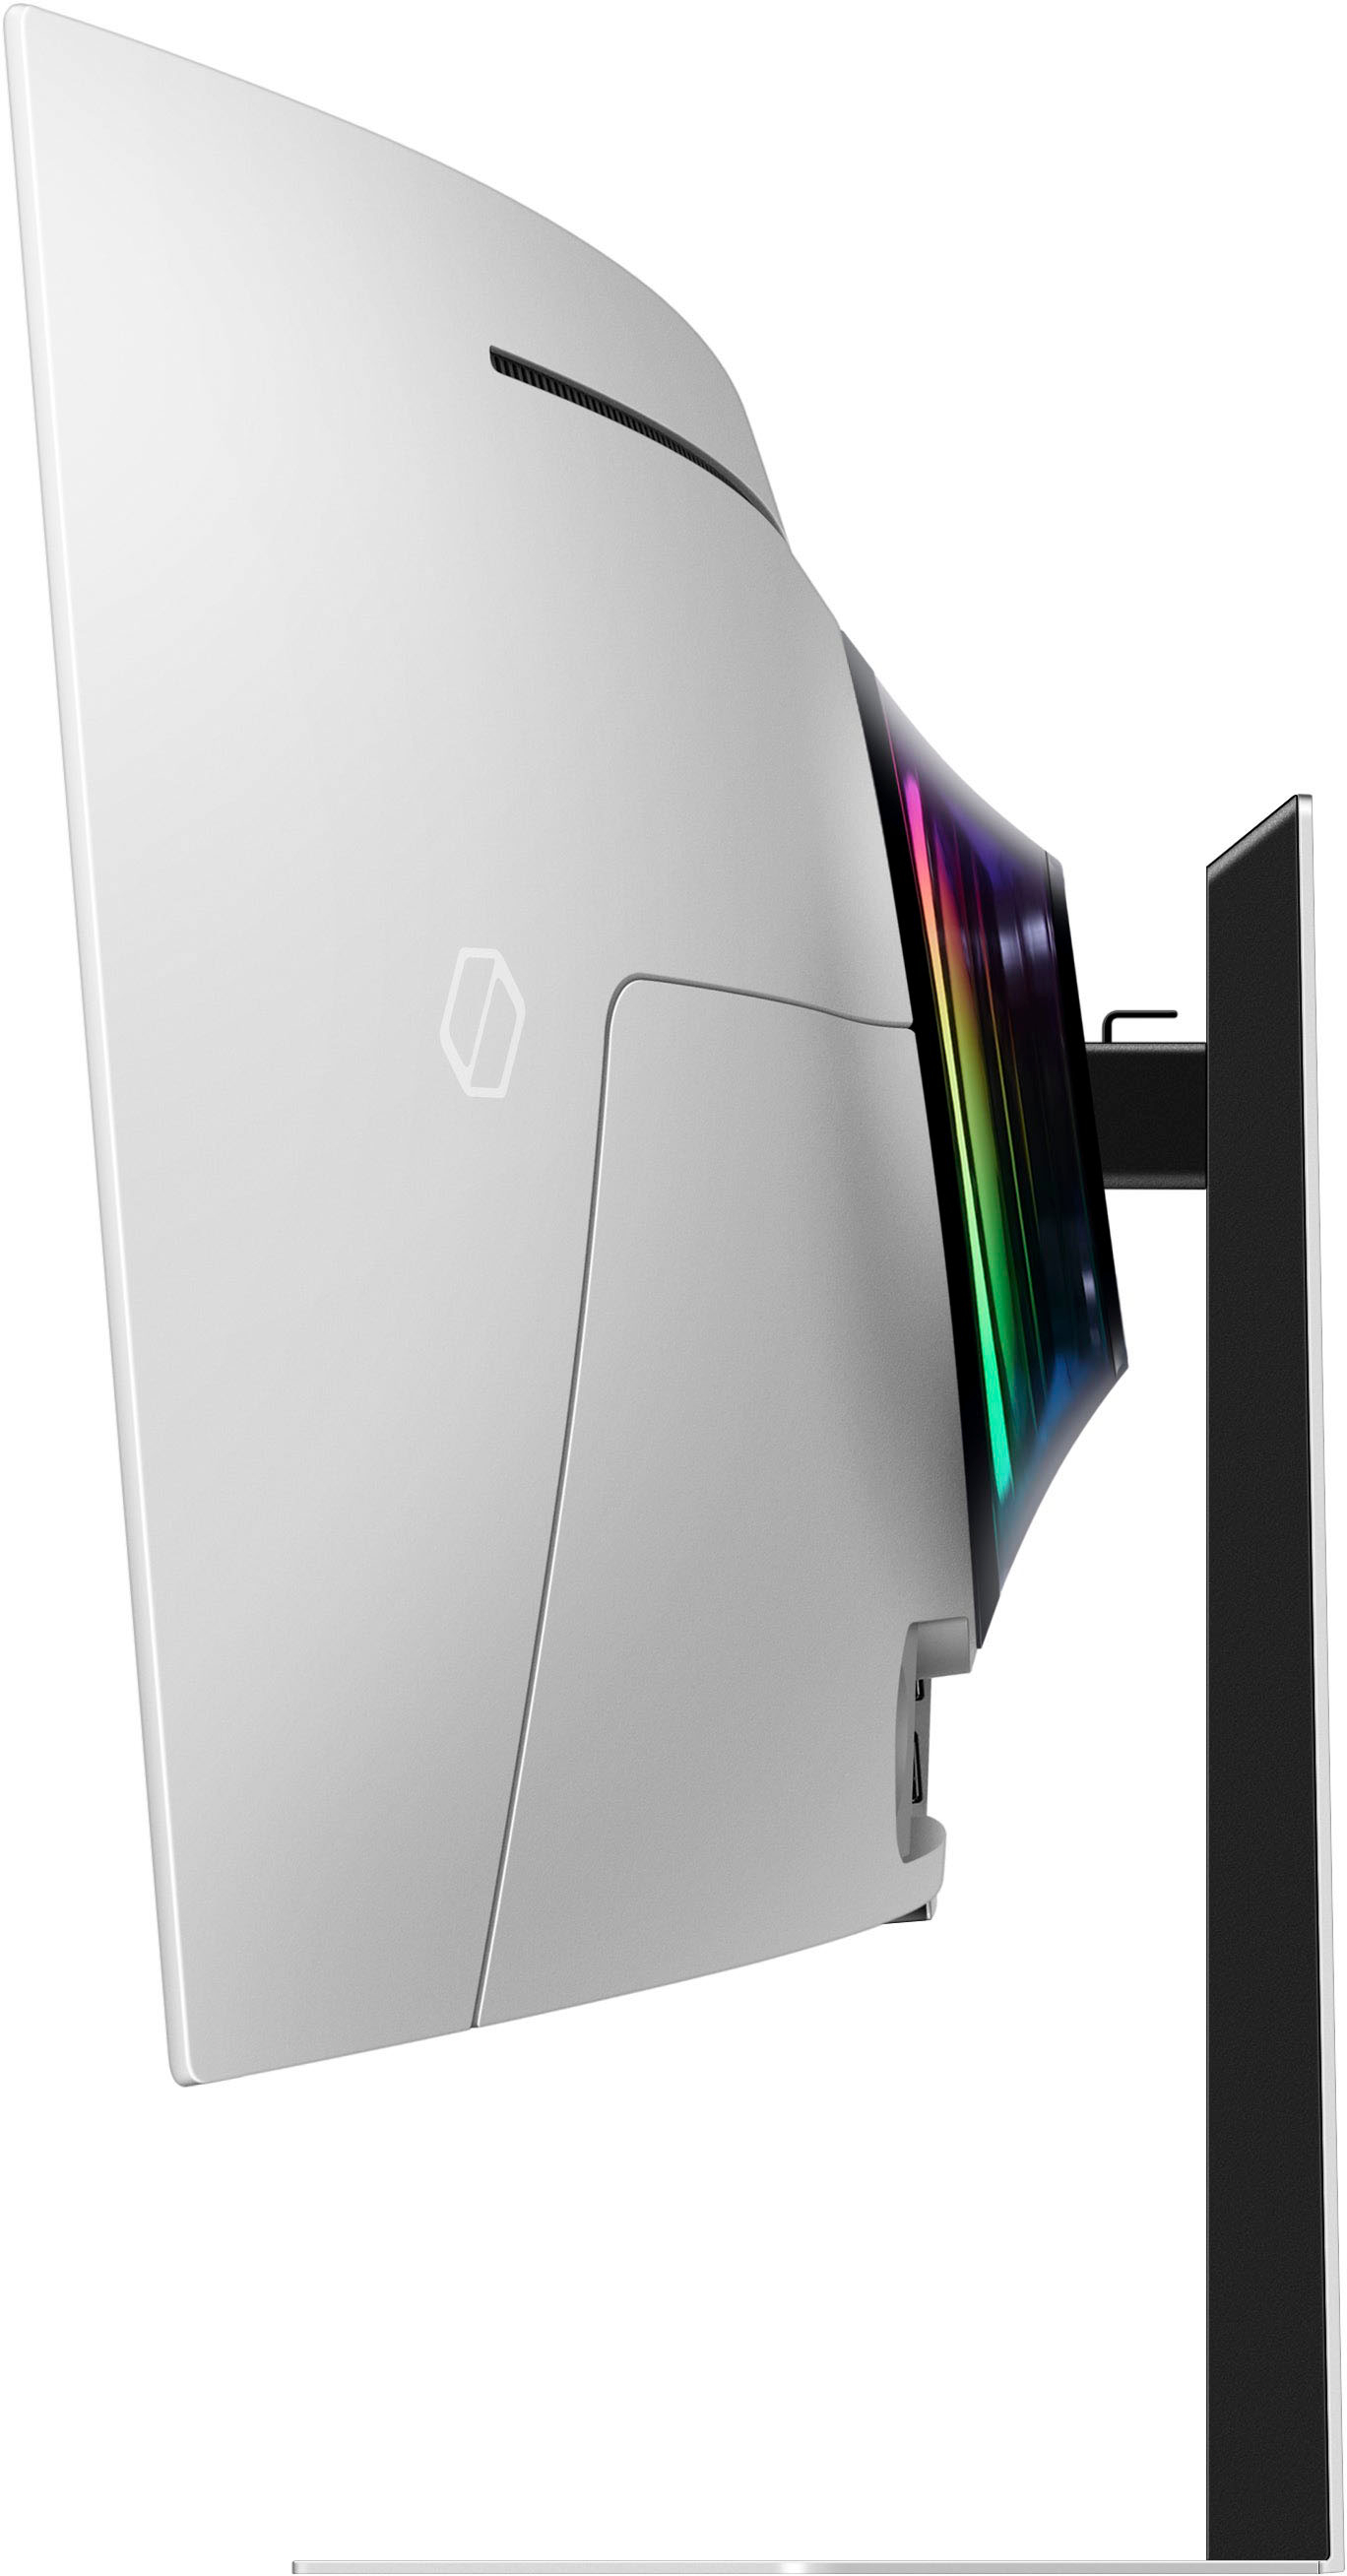 Samsung sort son écran PC le plus fou ! L'Odyssey OLED G9 49 pouces ultra  large va vous impressionner, son prix aussi 